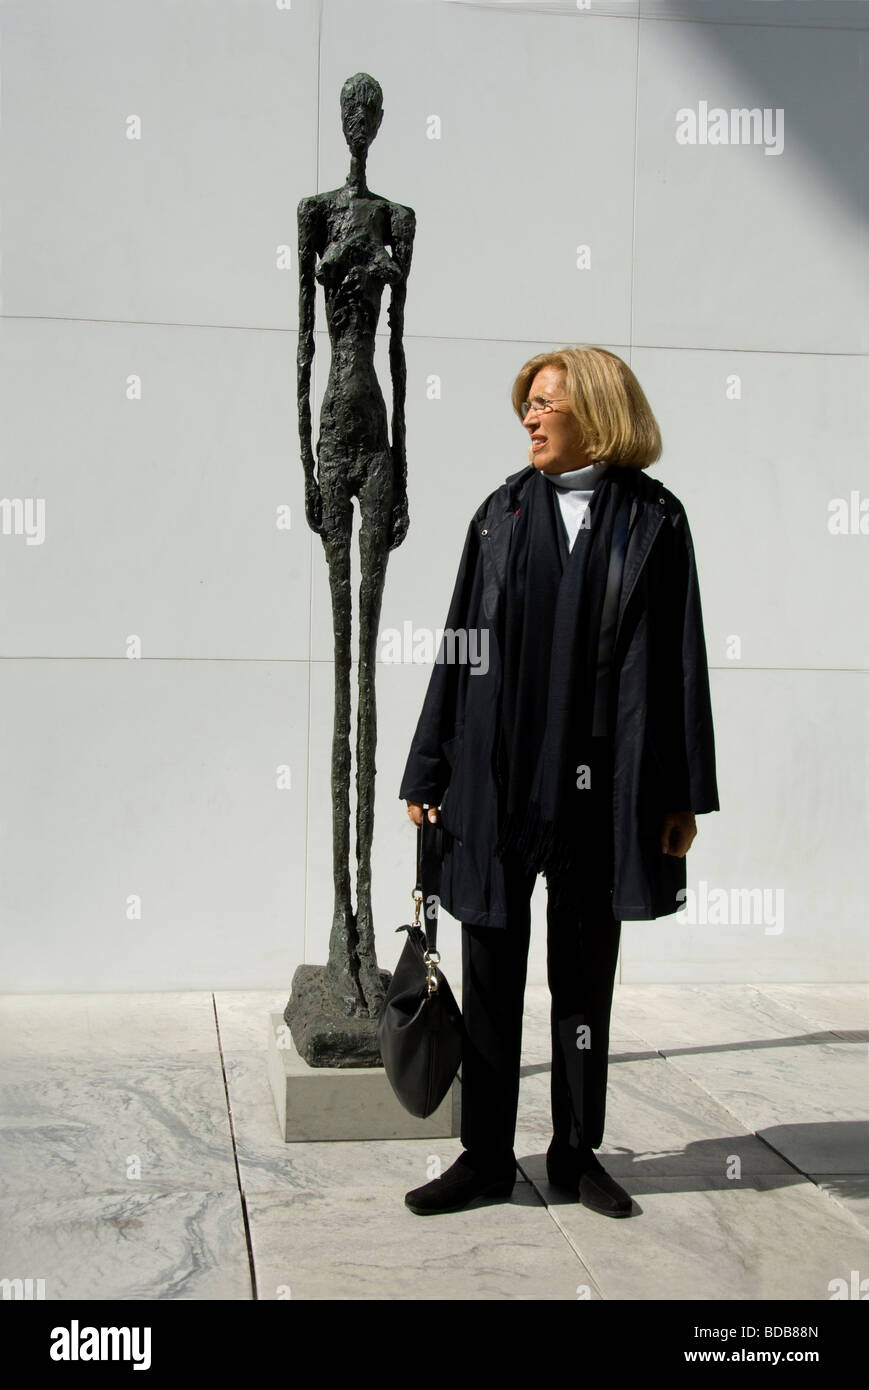 Sculpture Garden at MOMA Stock Photo